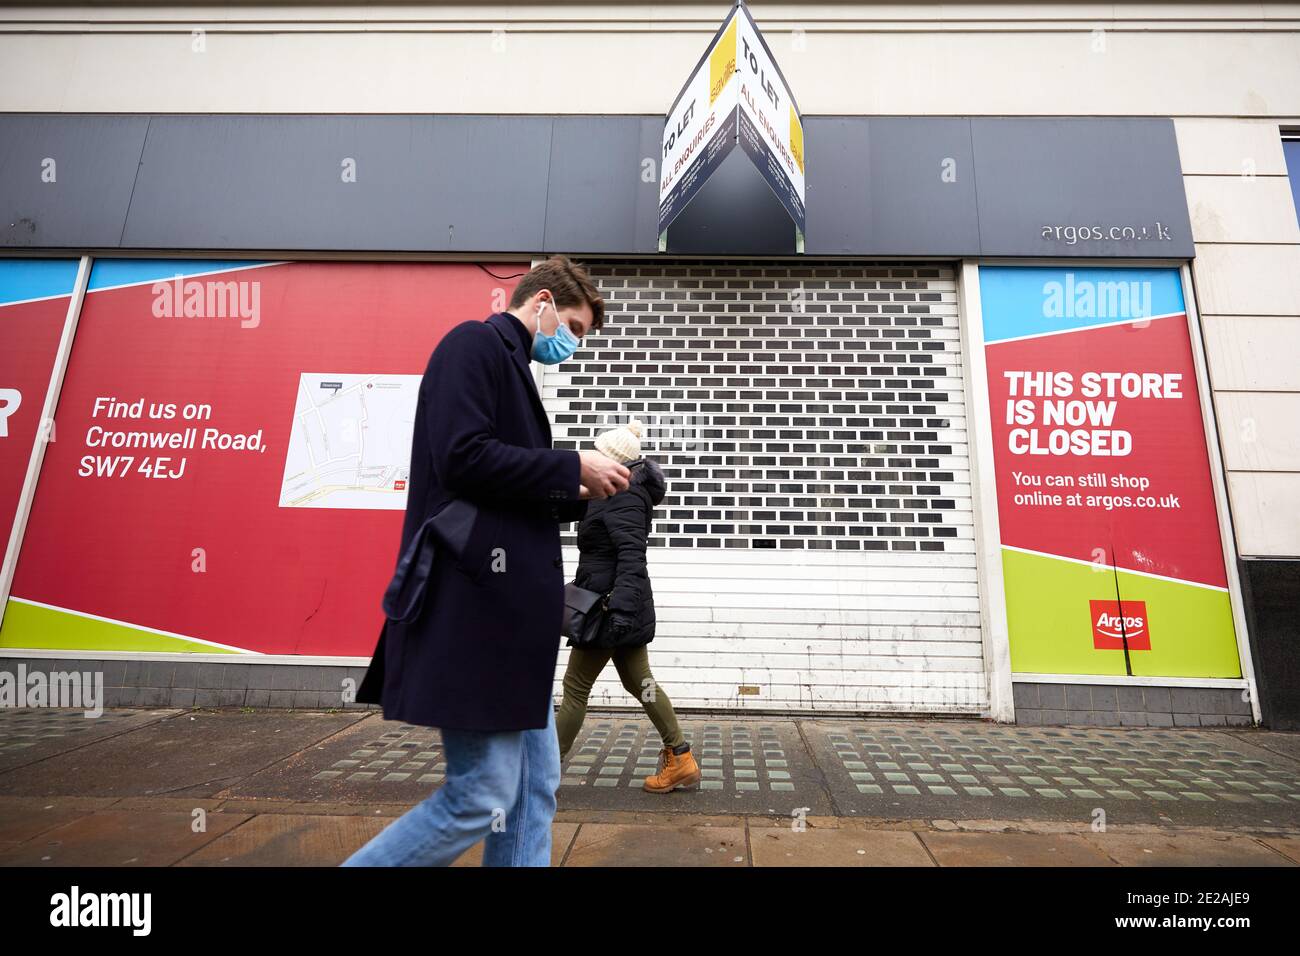 Londra, Regno Unito. - 12 Gen 2021: Un pedone mascherato passa davanti all'ex negozio Argos su Kensington High Street. Questo negozio è stato uno dei 125 negozi che la casa madre Sainsbury's ha recentemente annunciato di voler chiudere in tutto il Regno Unito. Foto Stock